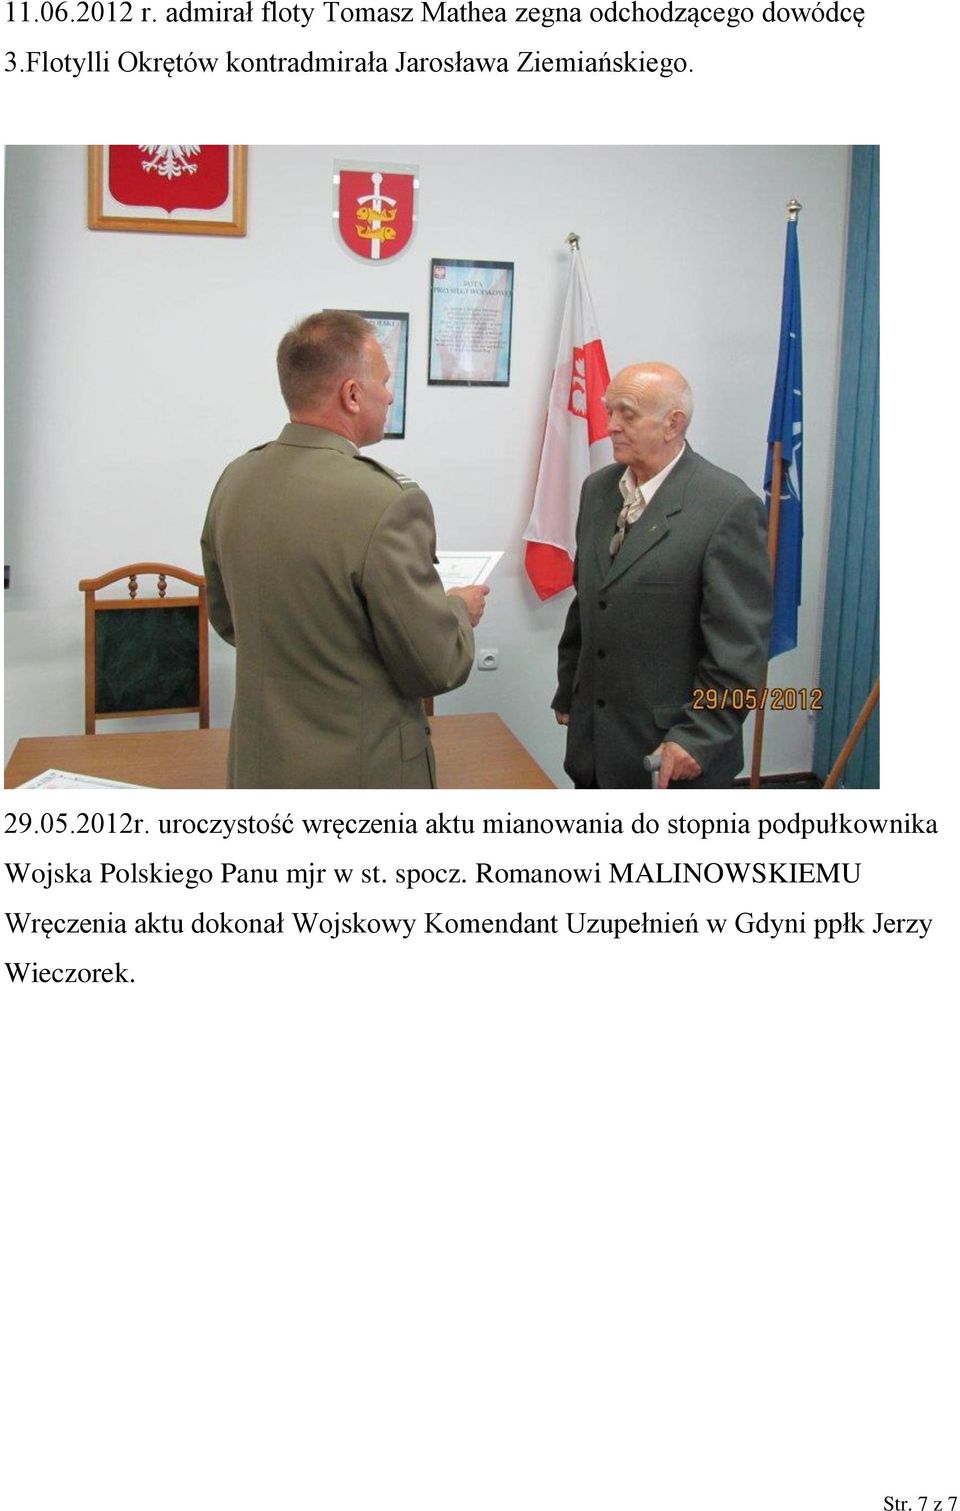 uroczystość wręczenia aktu mianowania do stopnia podpułkownika Wojska Polskiego Panu mjr